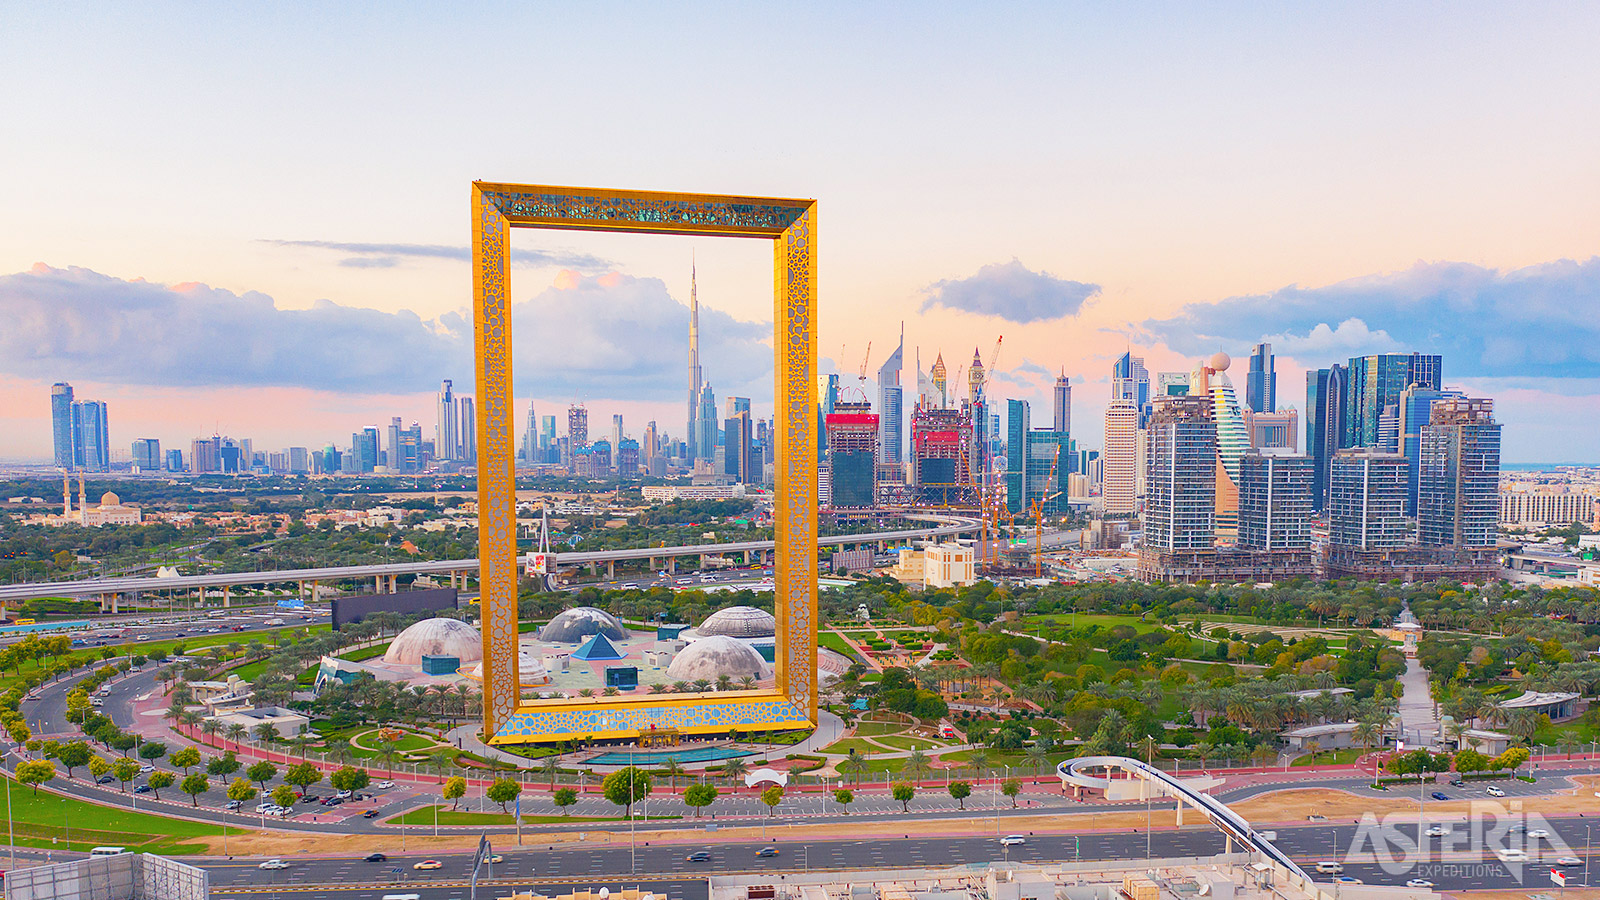 Het opvallende Frame gebouw is zo gepositioneerd dat aan één zijde de karakteristieke monumenten van het moderne Dubai te zien zijn zoals Burj Khalifa en aan de andere zijde de oude elementen van Dubai